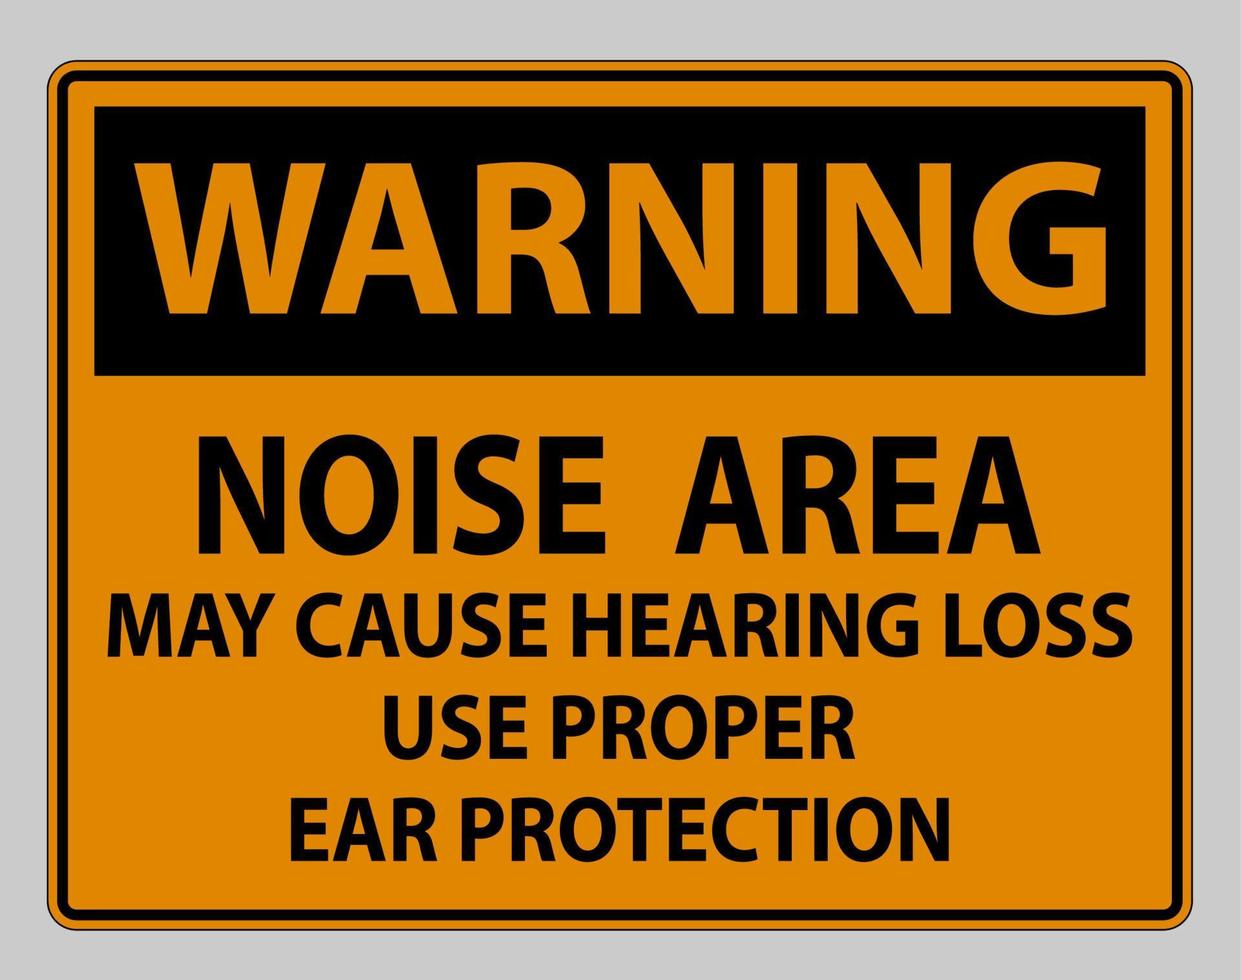 señal de advertencia área de ruido puede causar pérdida auditiva use protección adecuada para los oídos vector